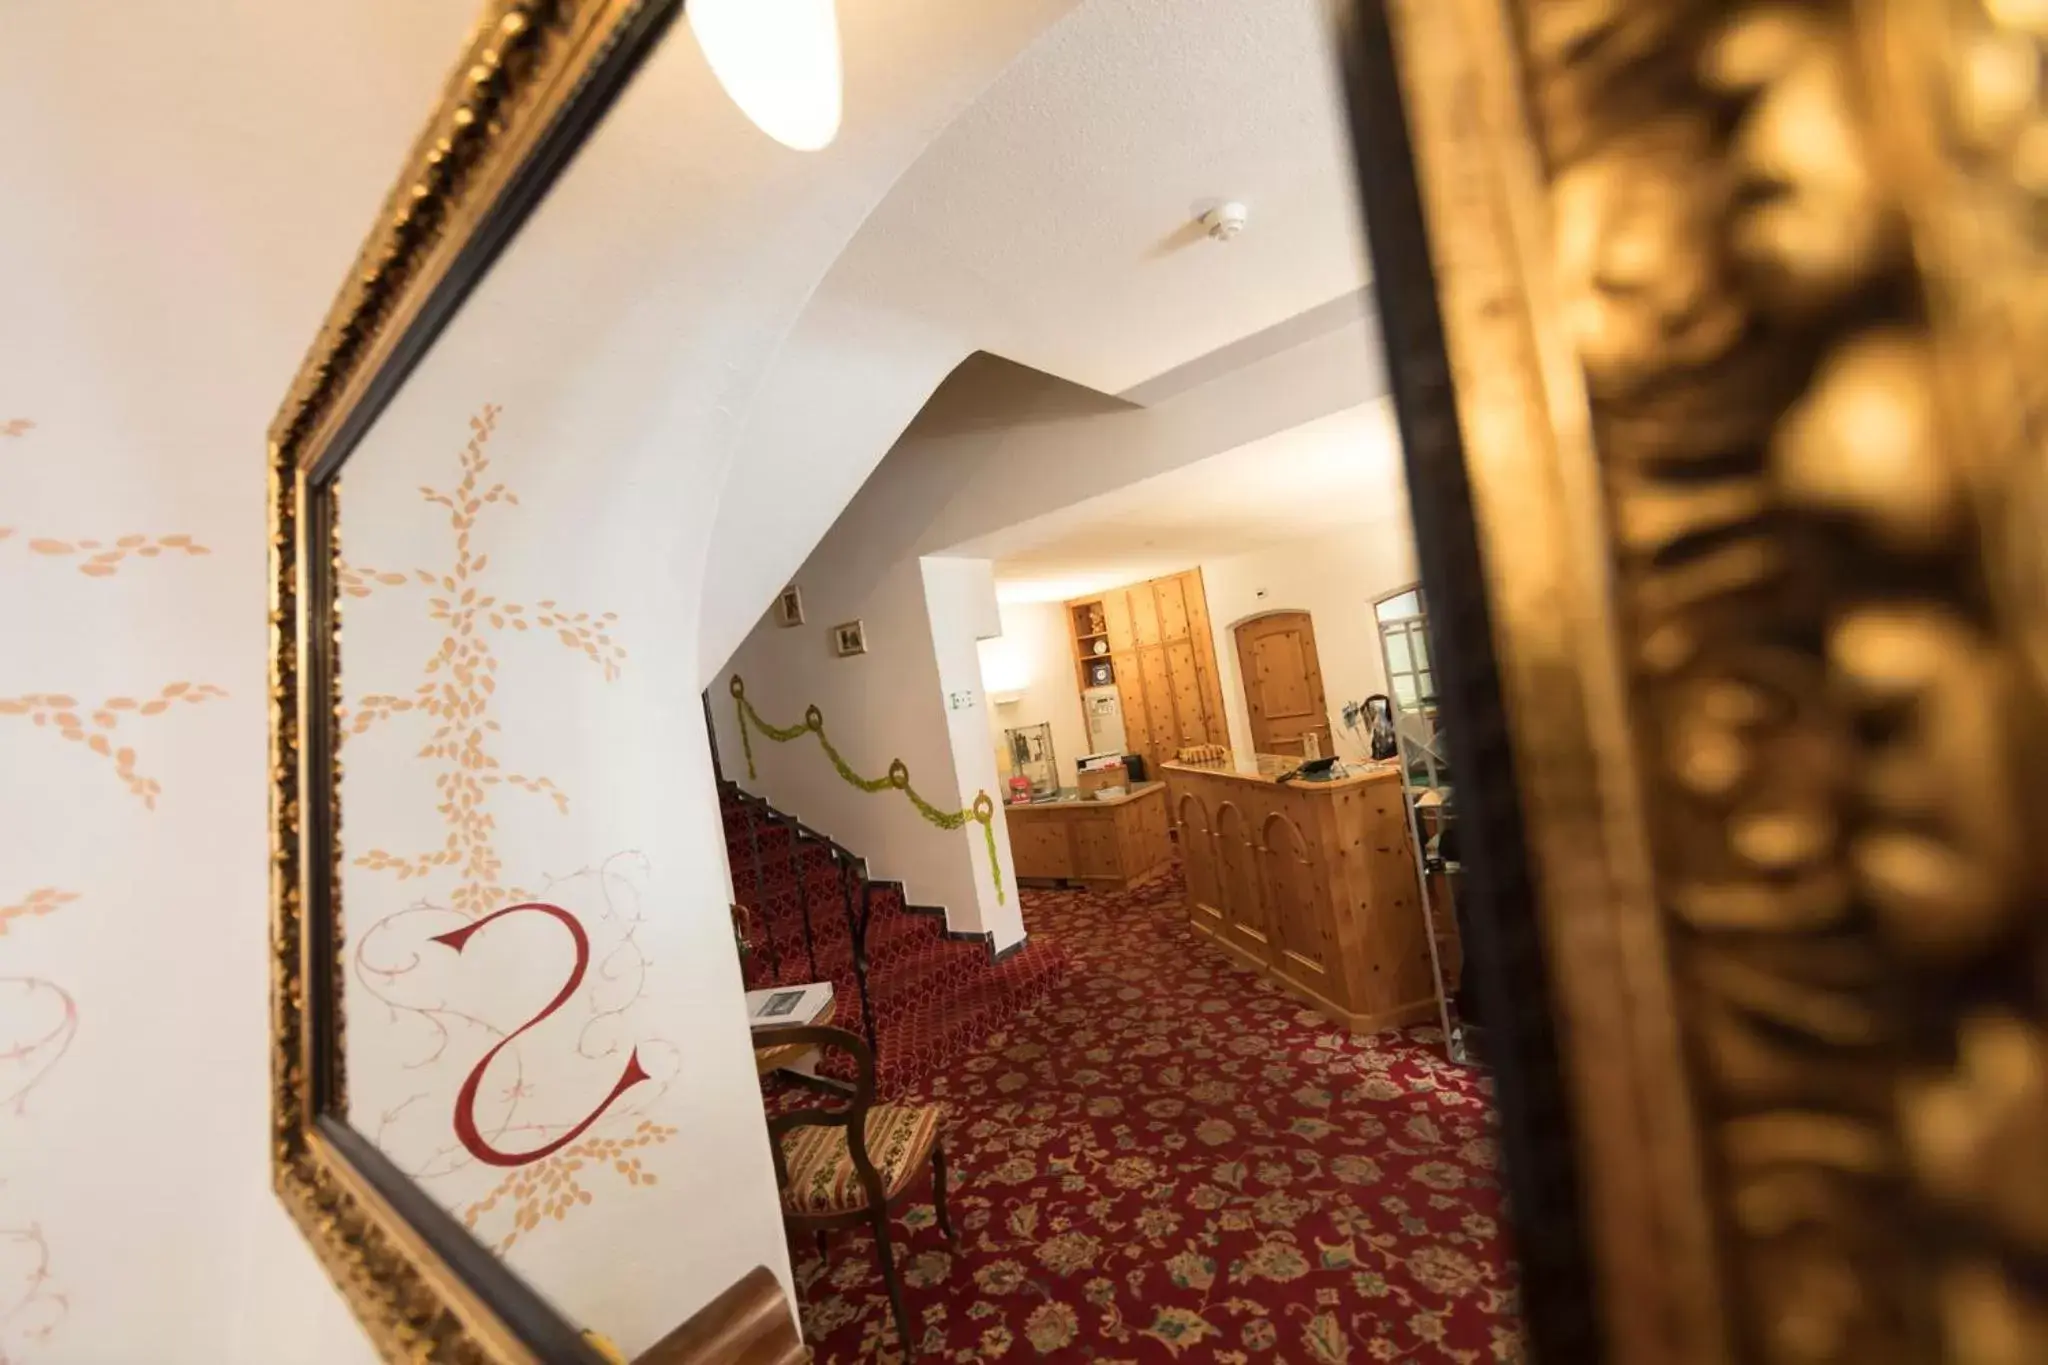 Lobby or reception in Hotel Bernina